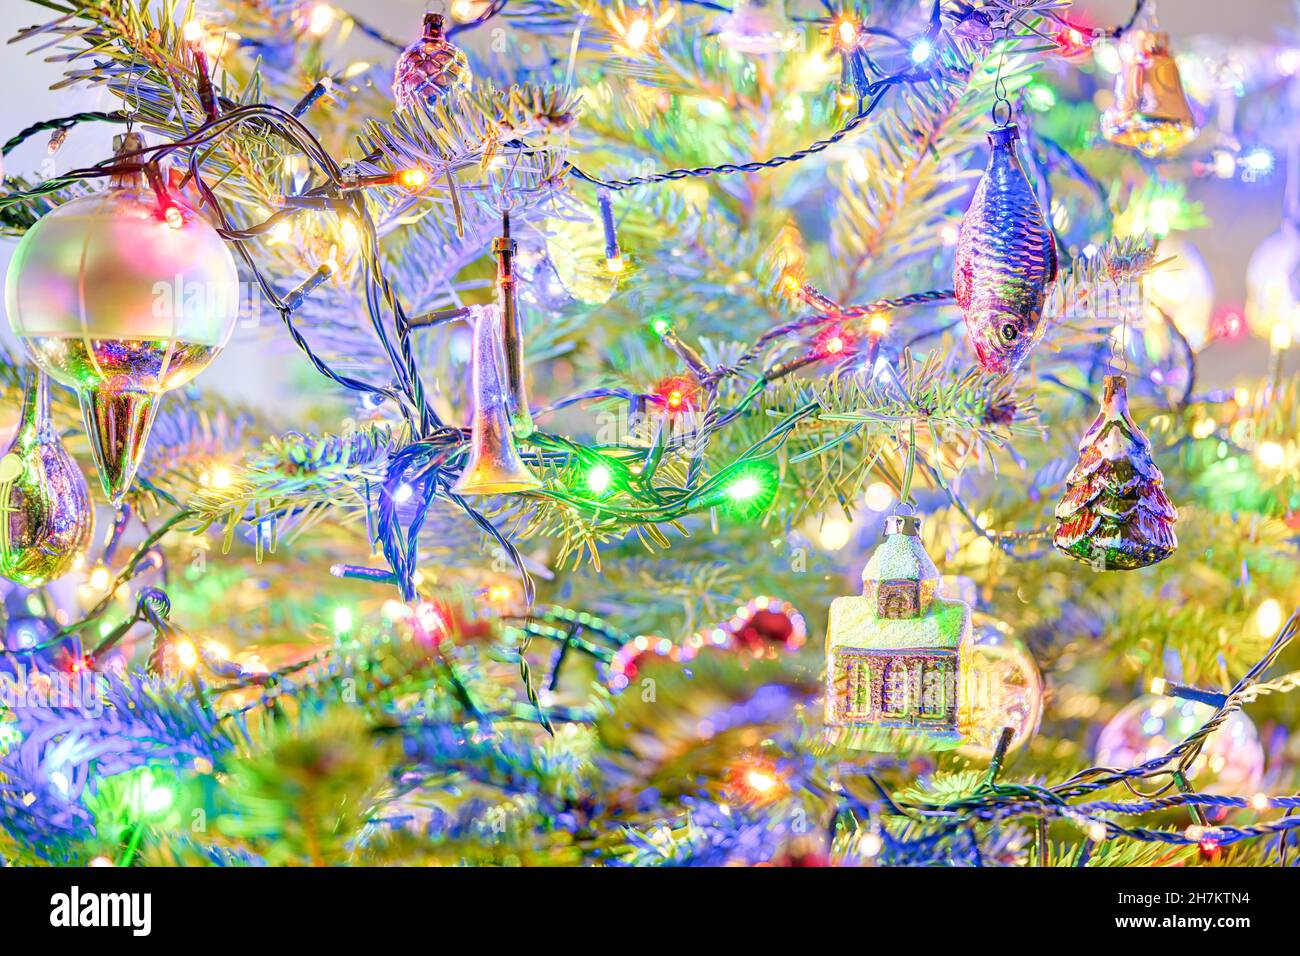 Sapin de Noël avec décorations de Noël vieux Noël vintage ornements Noël boules de Noël ampoules de Noël bulles de Noël lumières LED colorées Banque D'Images